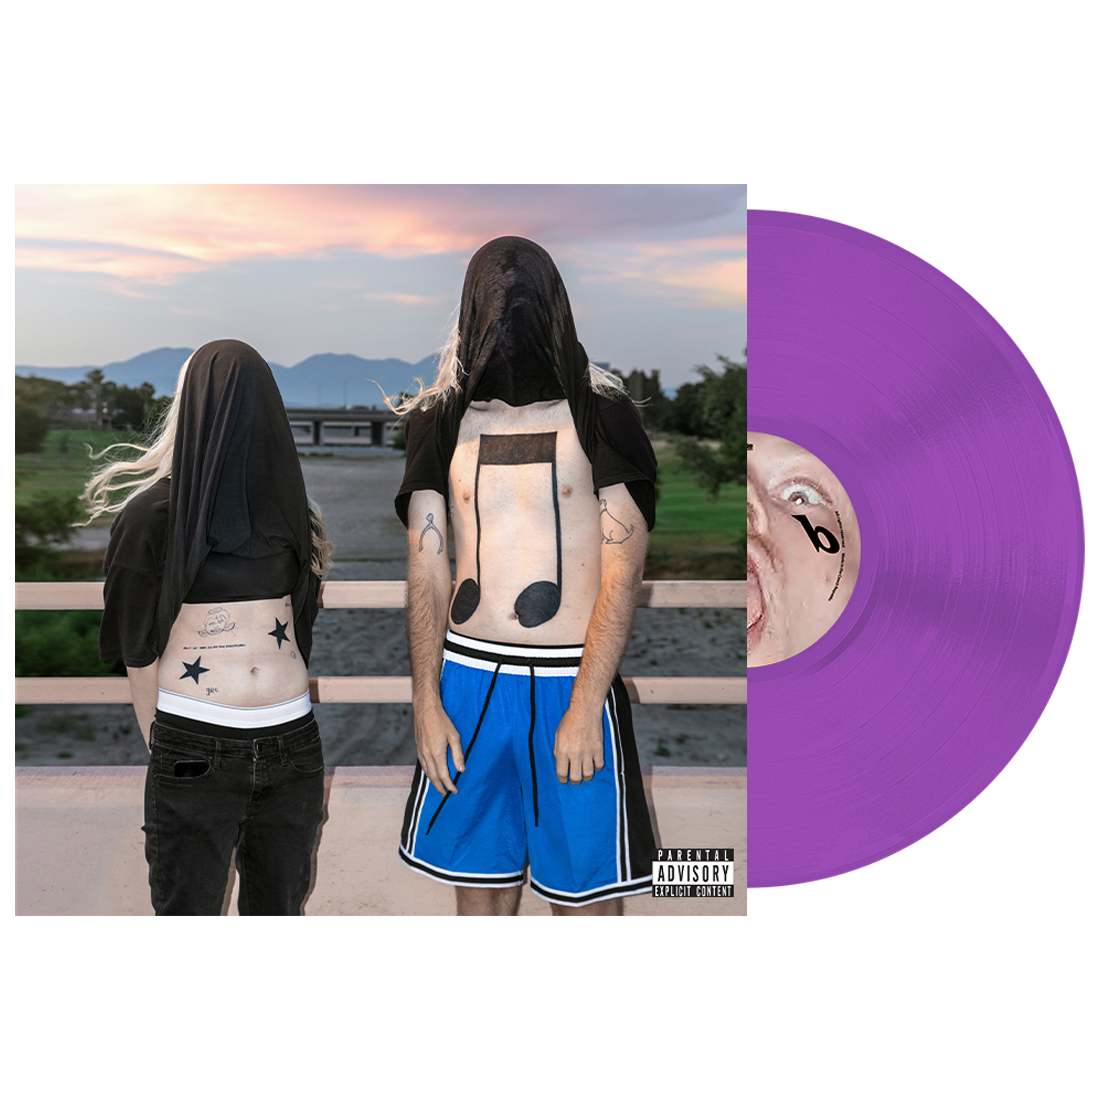 100 gecs 10,000 gecs vinyl (purple)